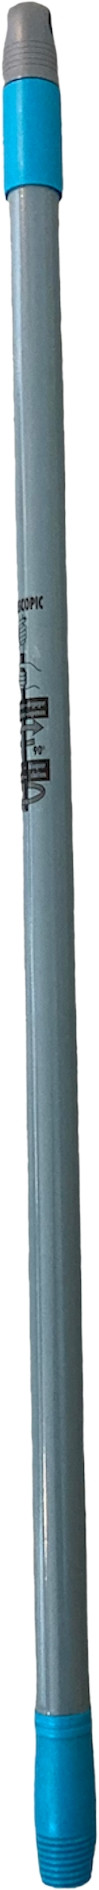 Teleskopskaft med gevind 130 cm Gra/turkis, Metal